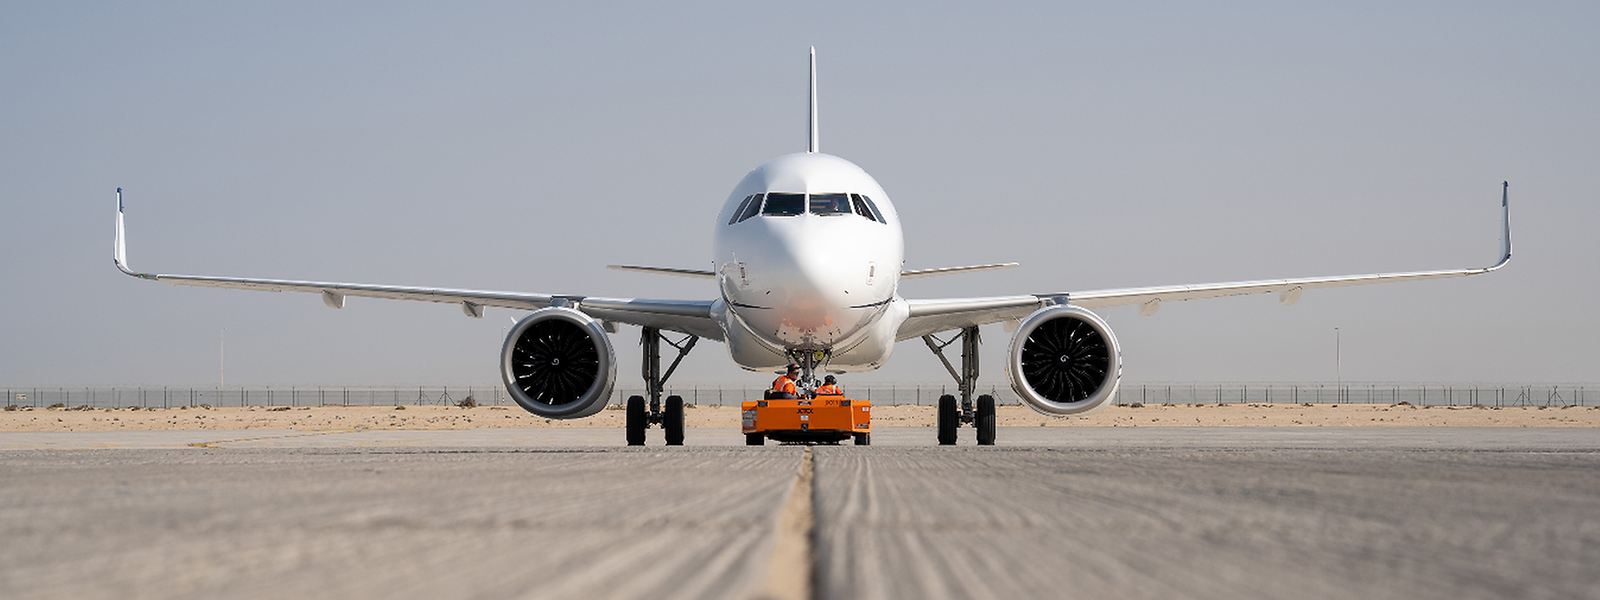 Mit einer A320neo will Flylux Airlines an den Start gehen.